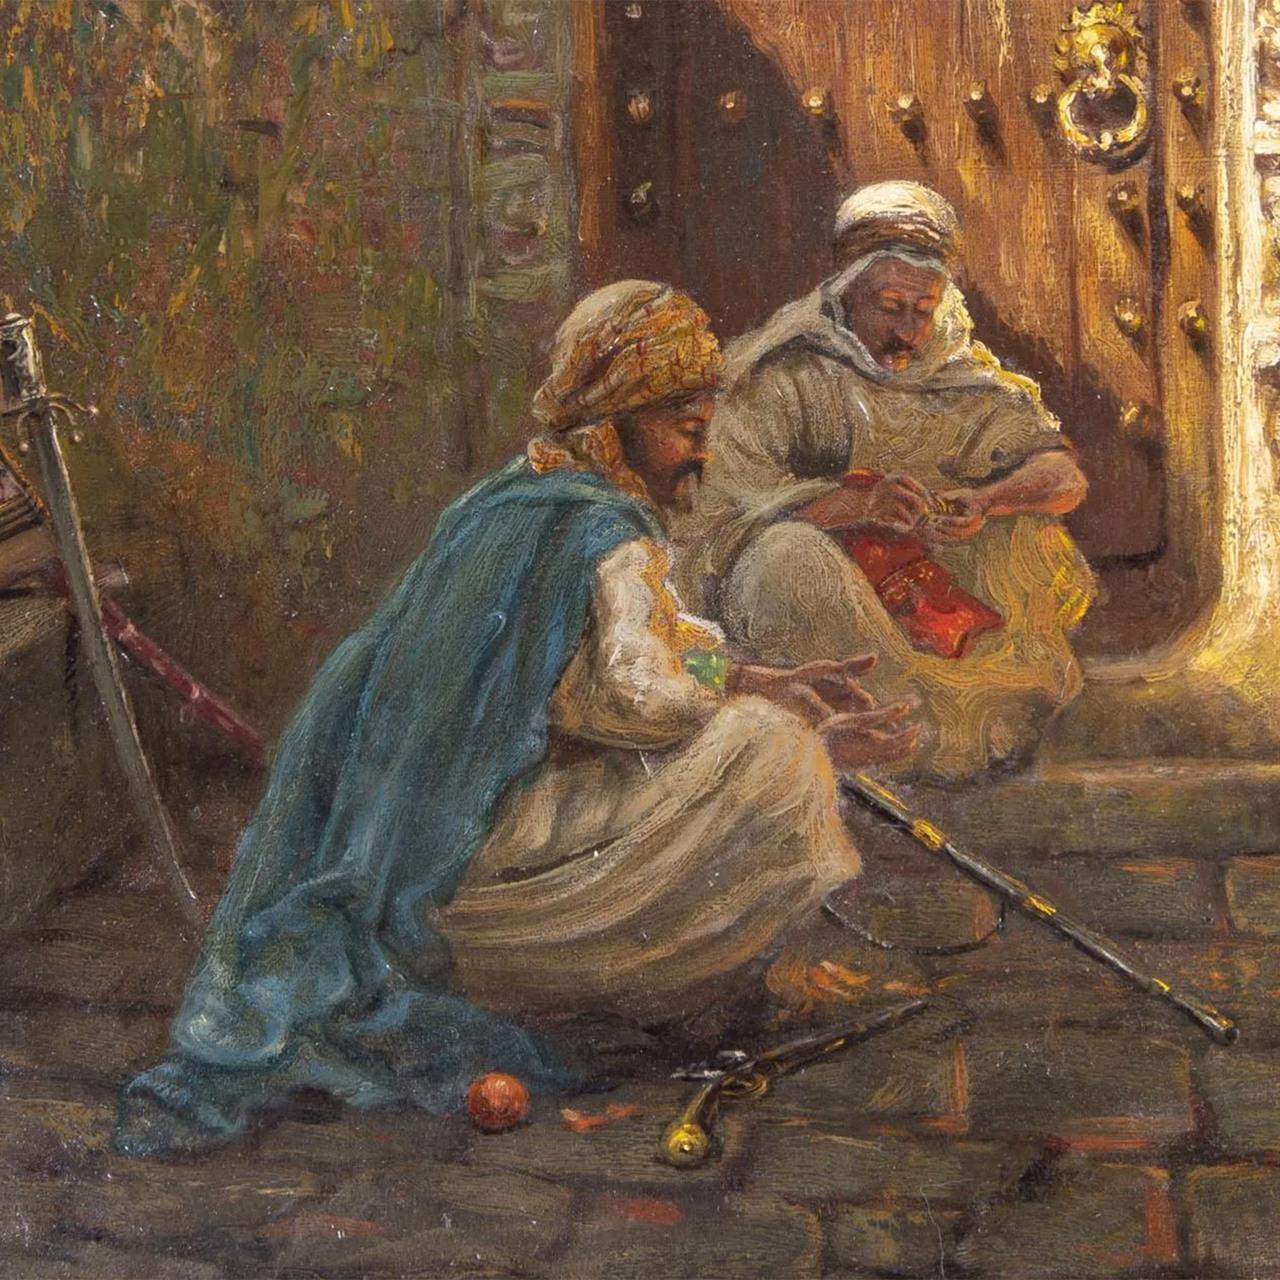 Titre : Guarding the Harem
Artiste : Addison Thomas Millar (1860-1913)
Origine : Américain
Date : 19ème siècle
Médium : Huile sur toile
Signature : Signé 